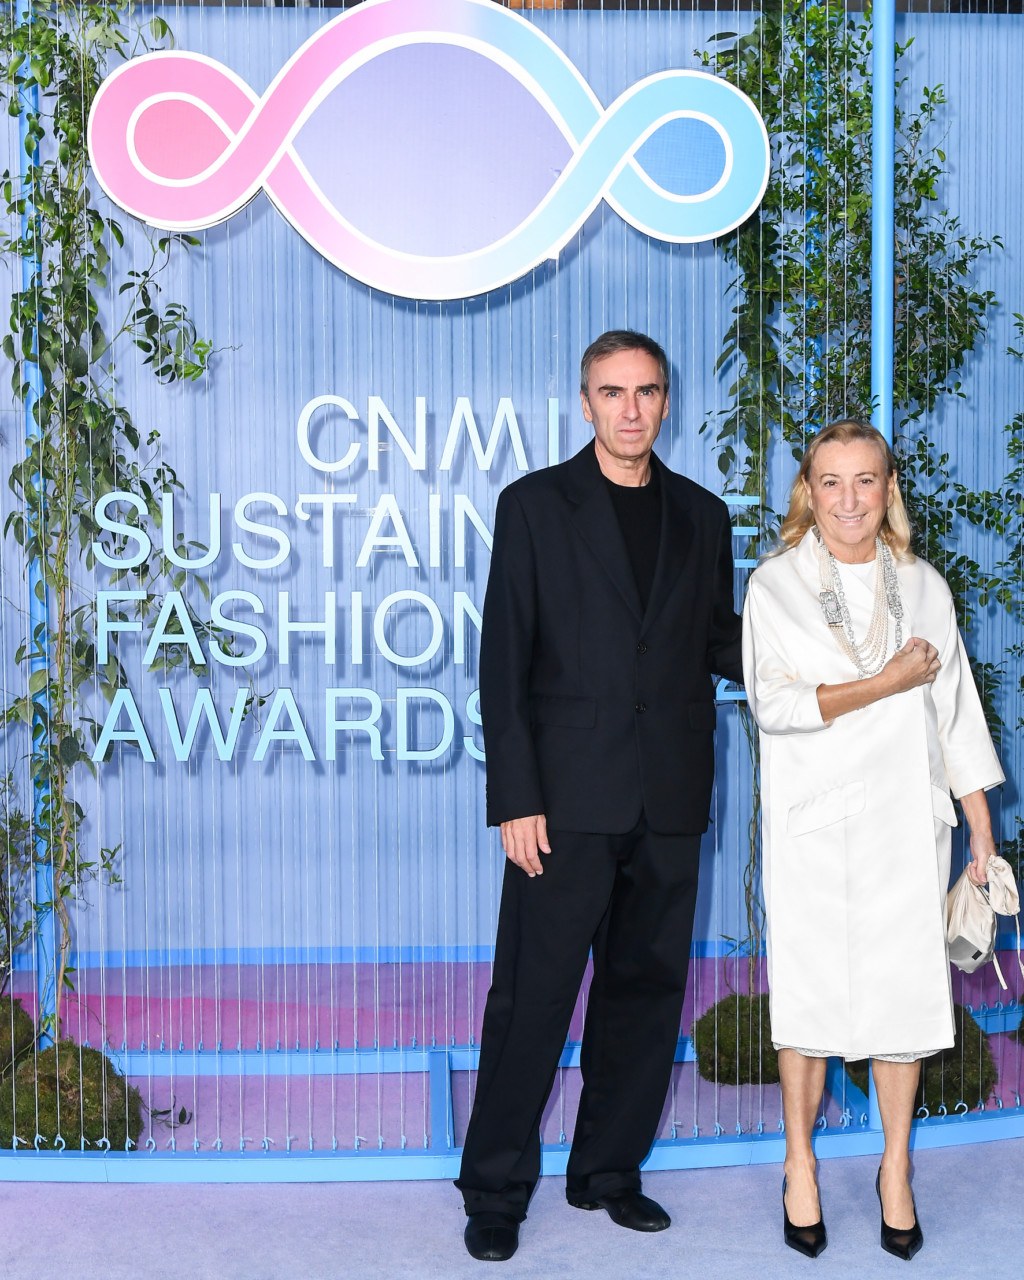 cnmi sustainable fashion awards - Everything You Need To Know About The CNMI Sustainable Fashion